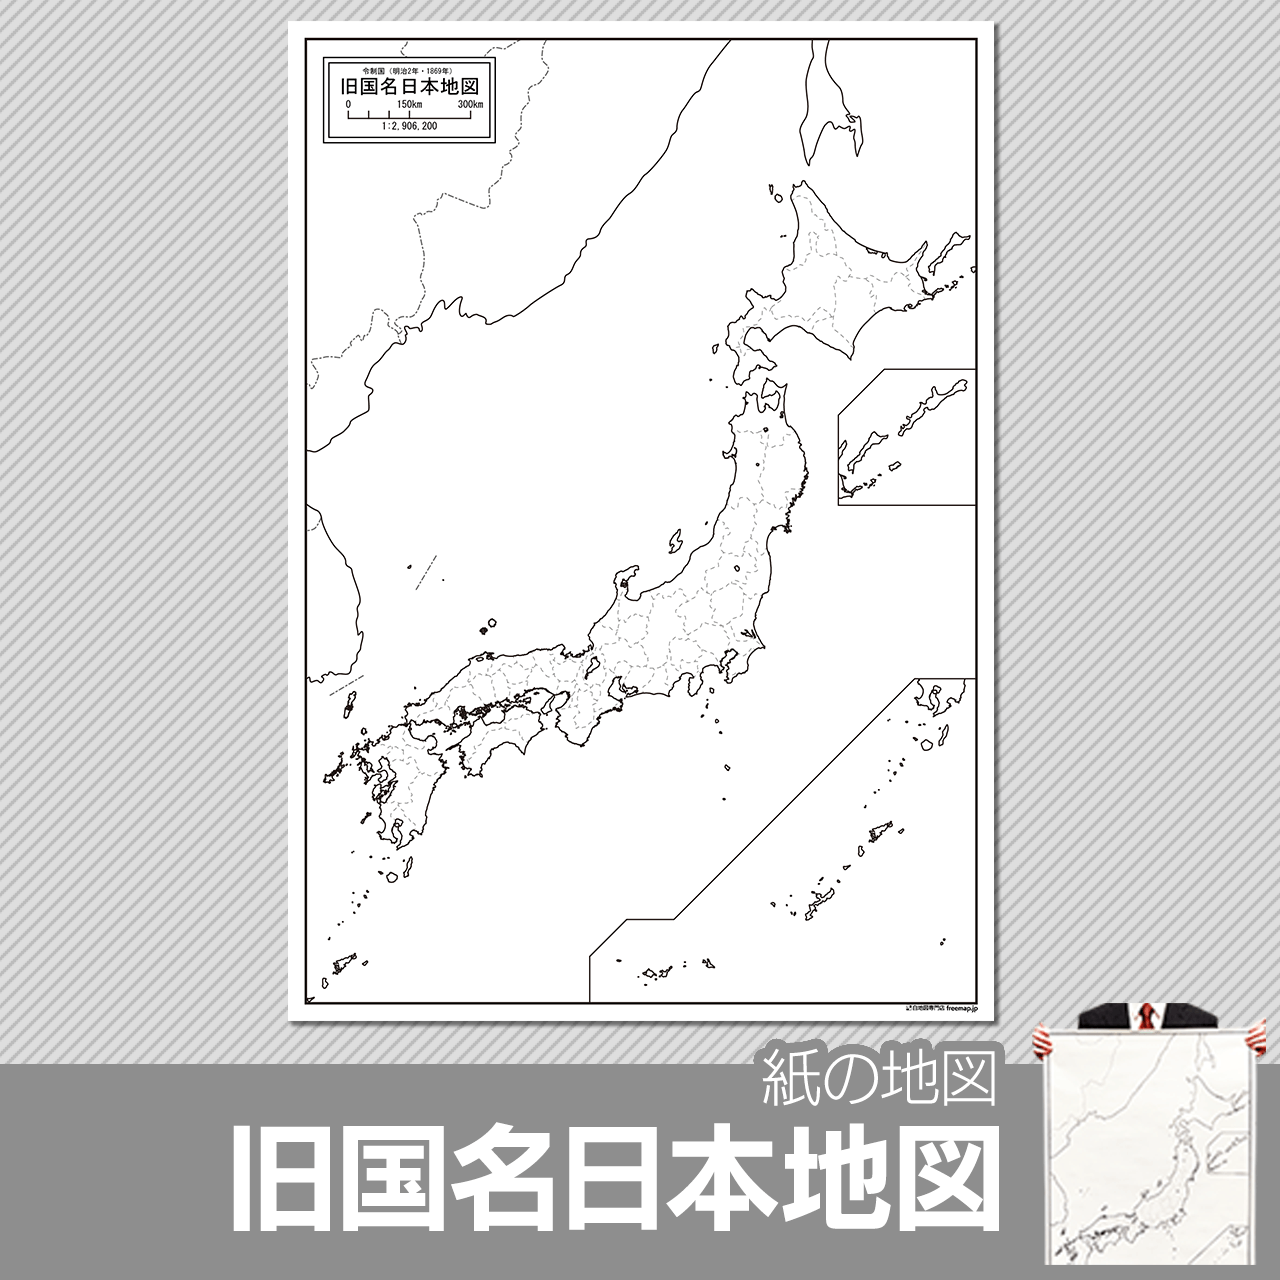 令制国時代の旧国名日本地図の紙の白地図のサムネイル